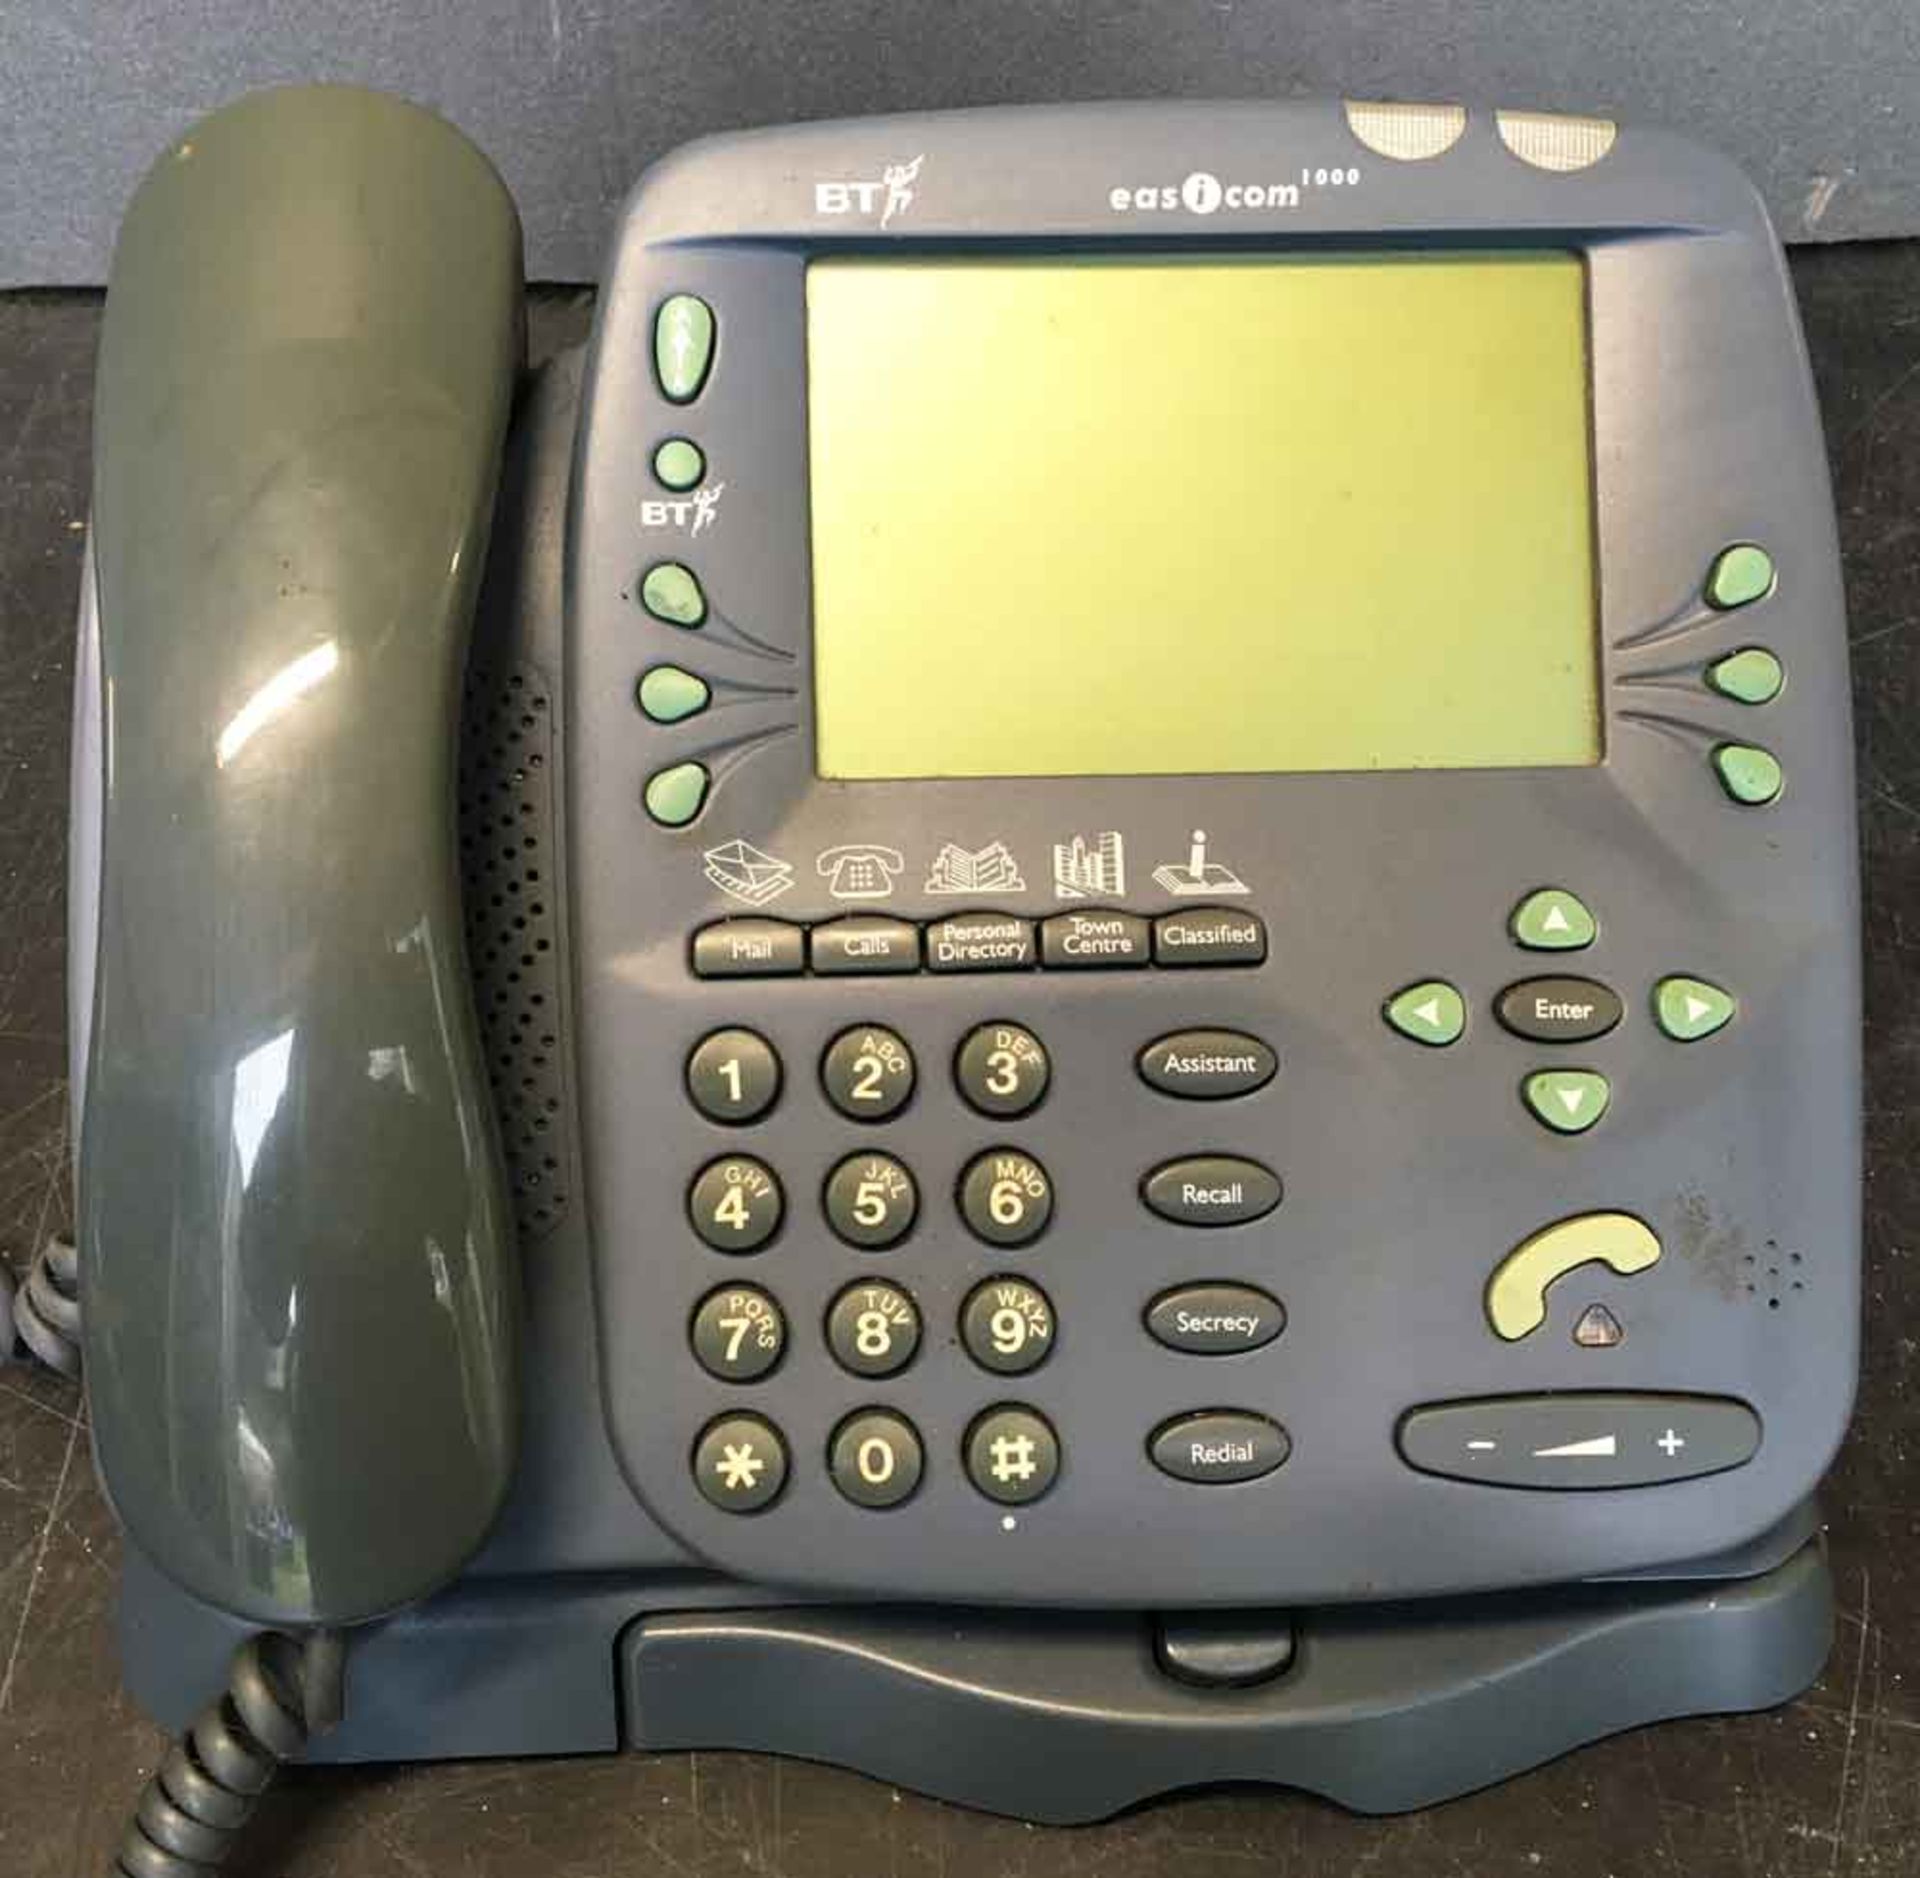 A BT Desktop Handsfree Telephone